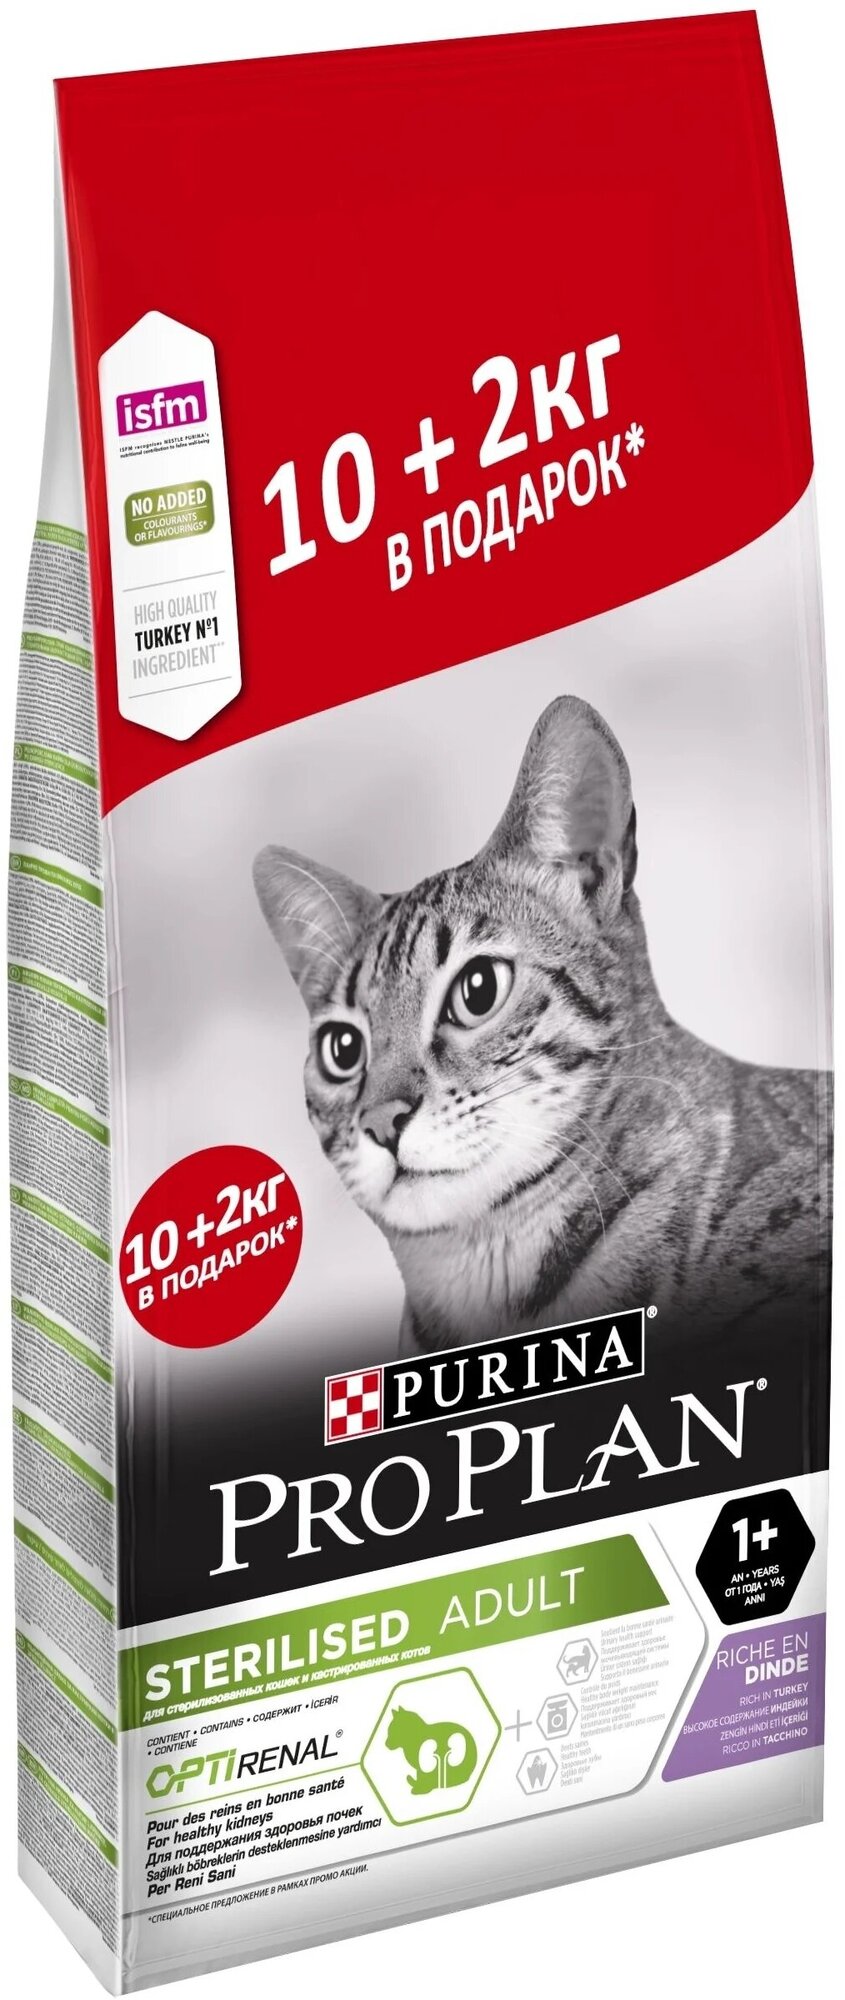 Сухой корм для стерилизованных взрослых кошек Pro Plan Sterilised OptiRenal, с индейкой 12 кг (2 кг в подарок)